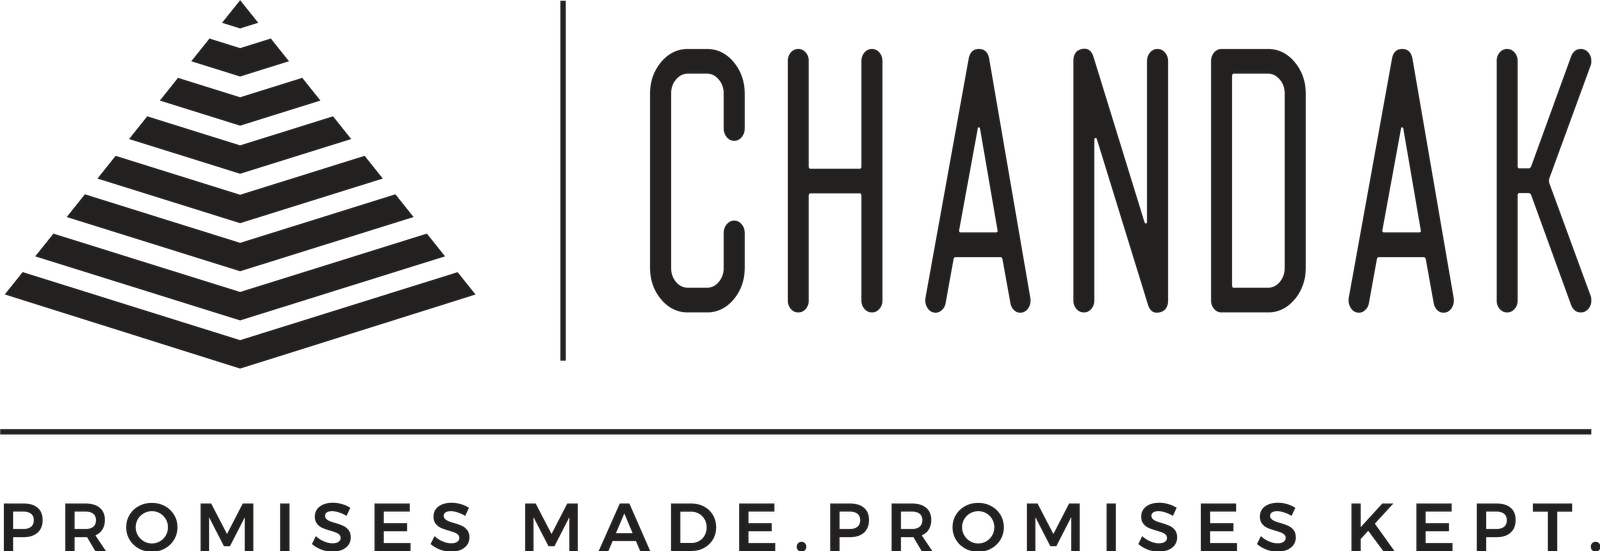 chandak group logo